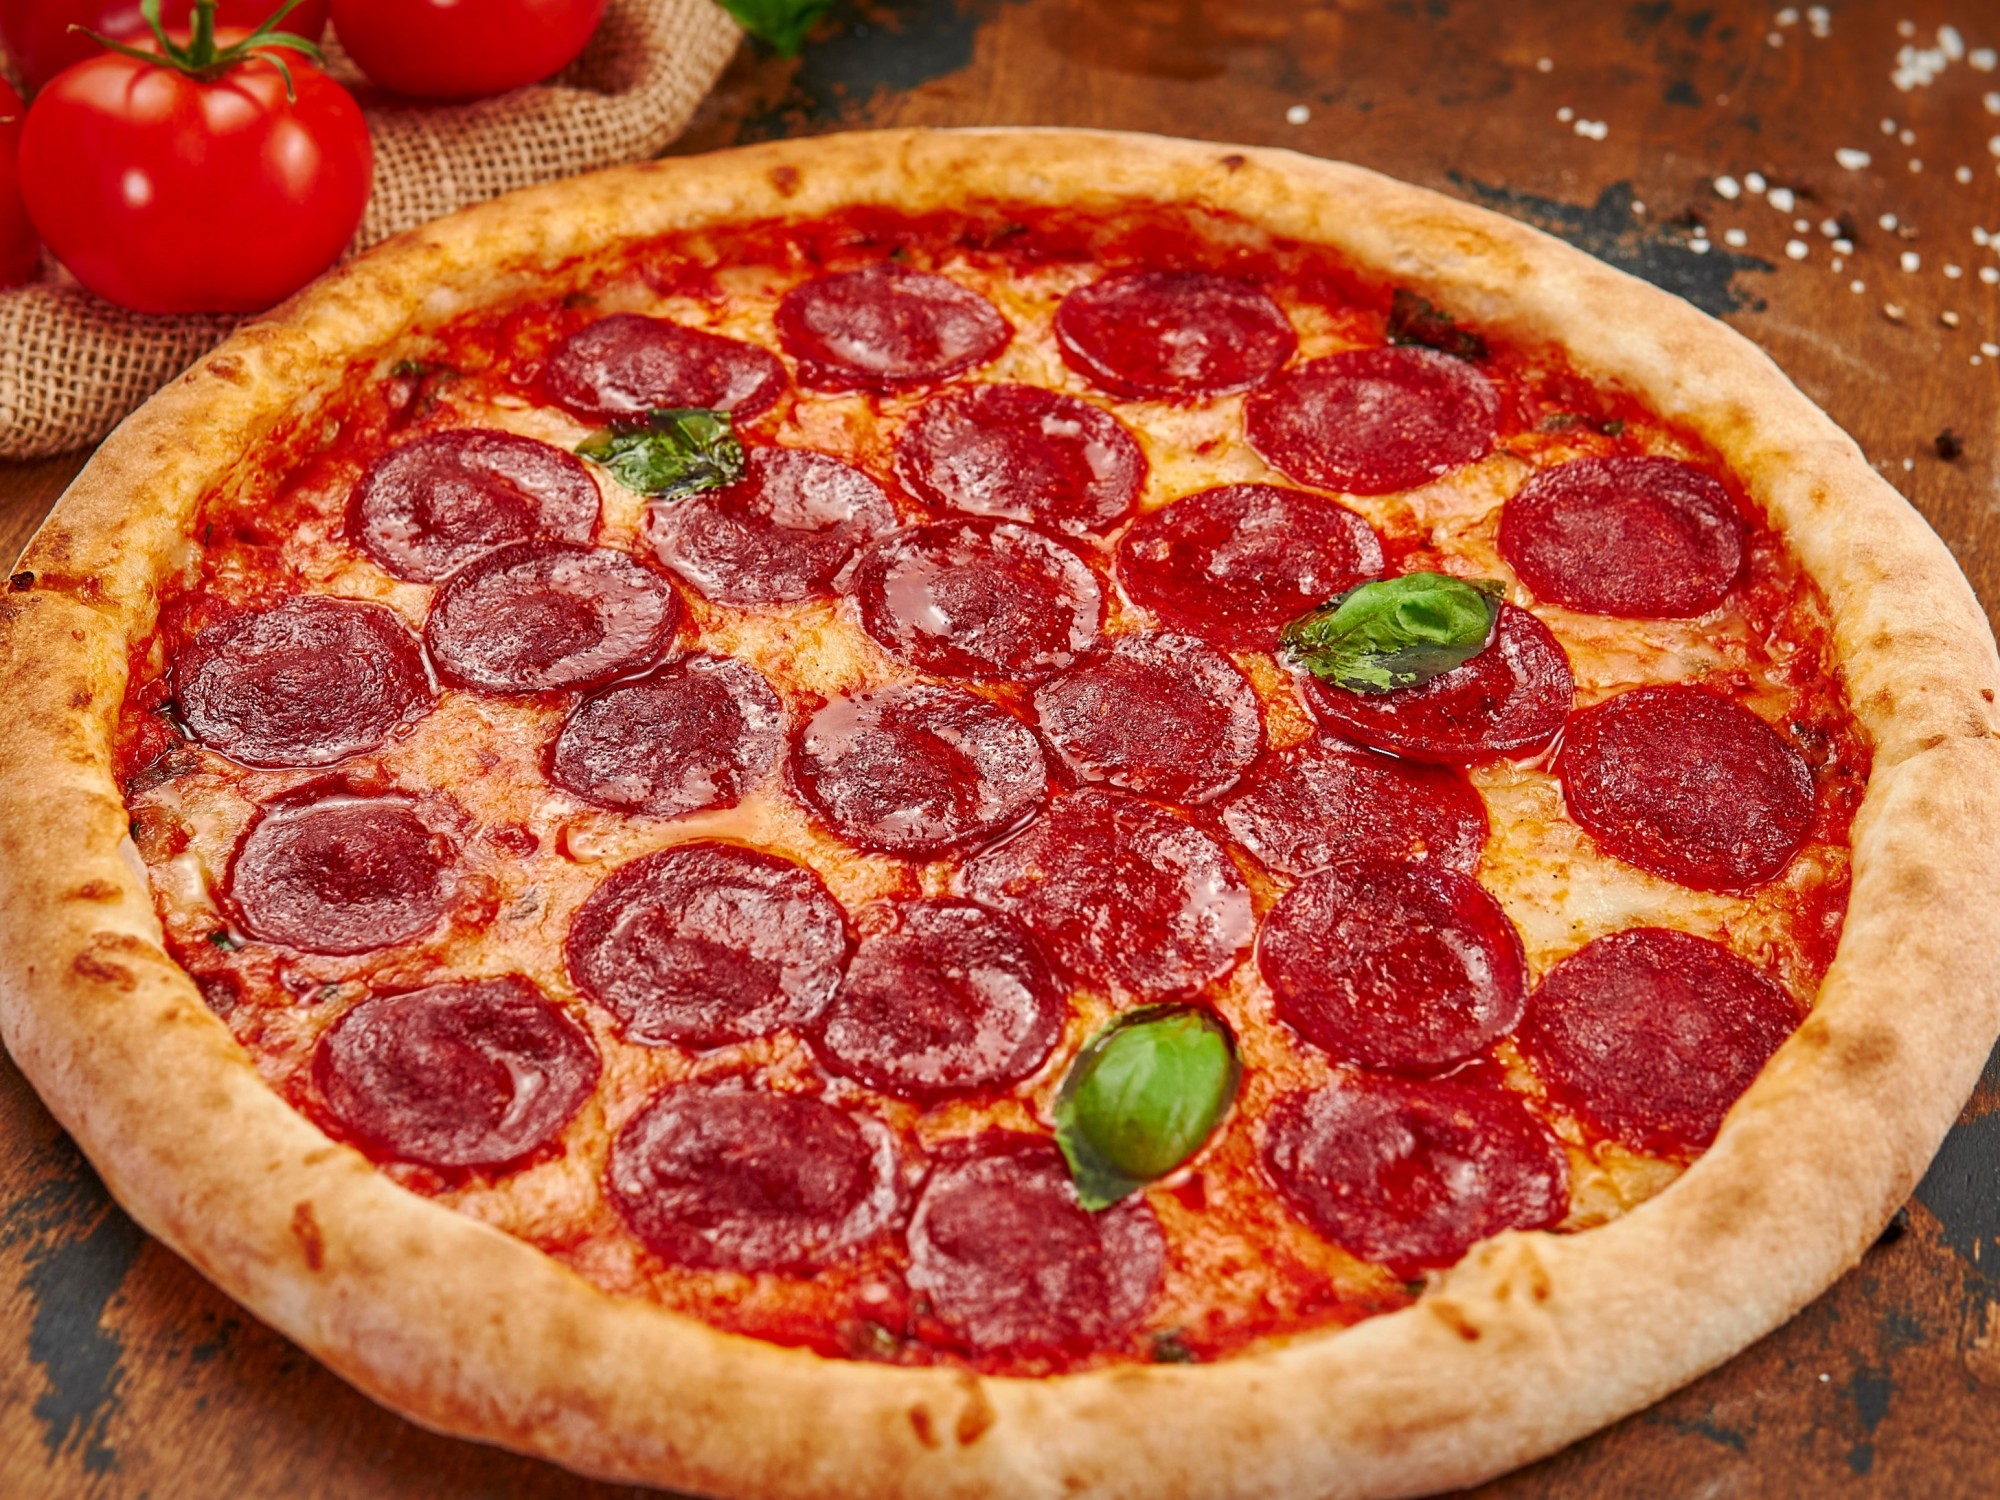 цена на пиццу пепперони фото 114